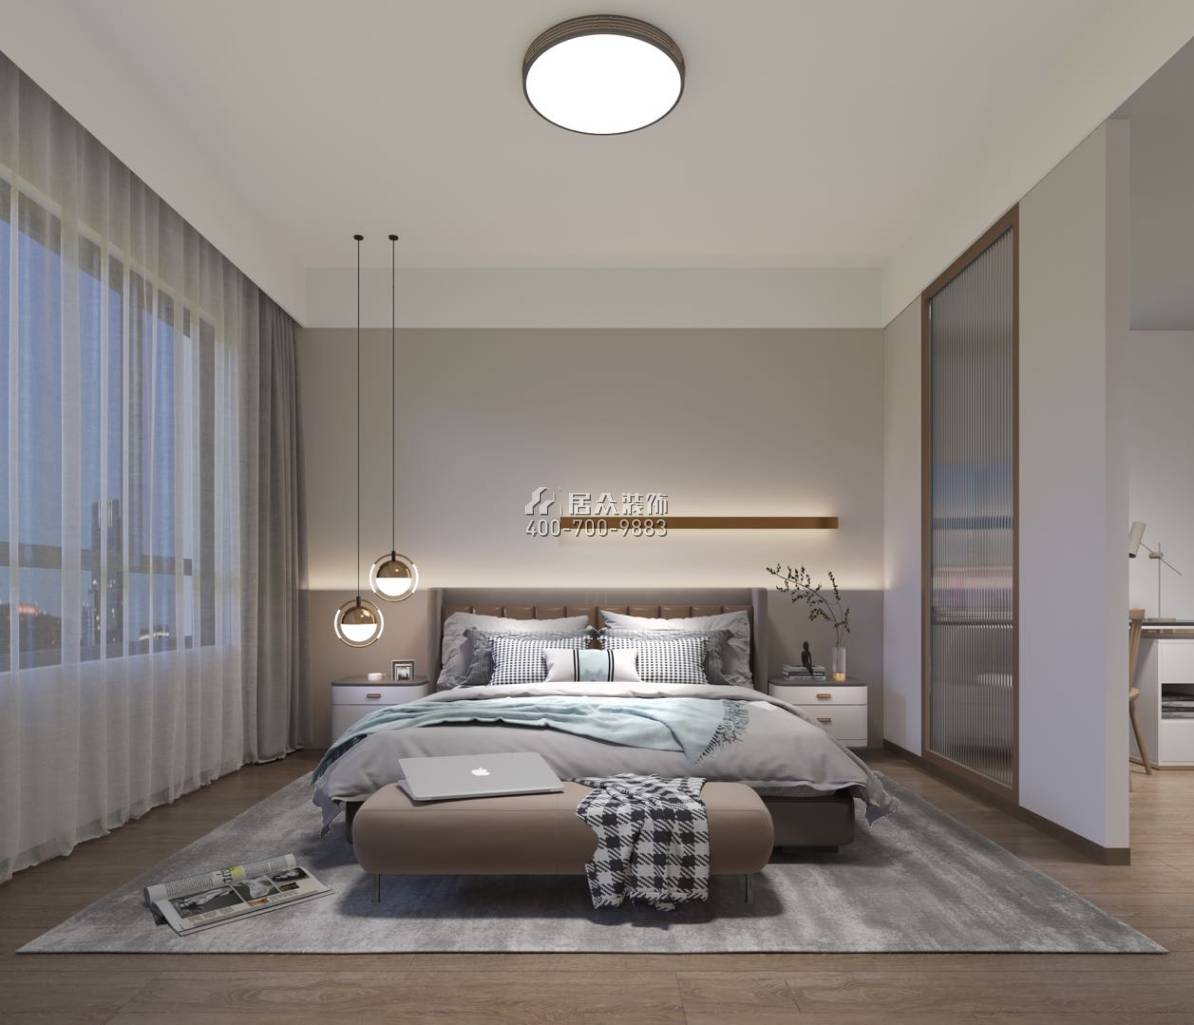 中信紅樹灣-三期638平方米現代簡約風格復式戶型臥室裝修效果圖